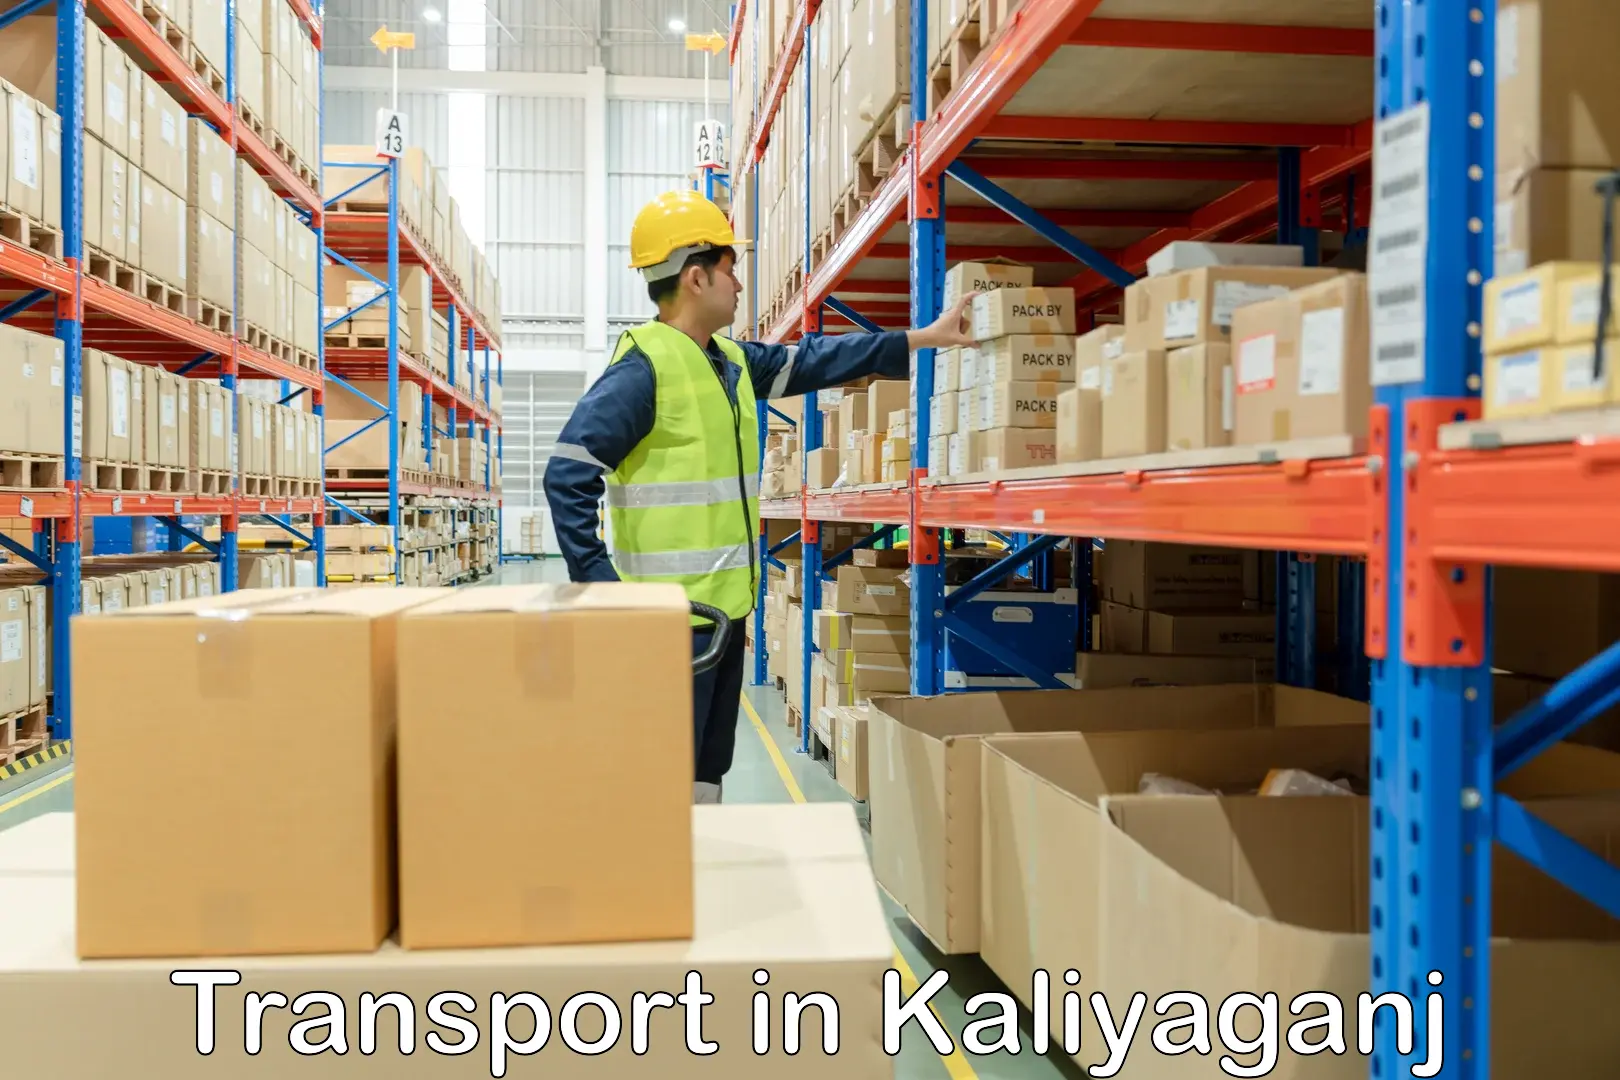 Transportation services in Kaliyaganj